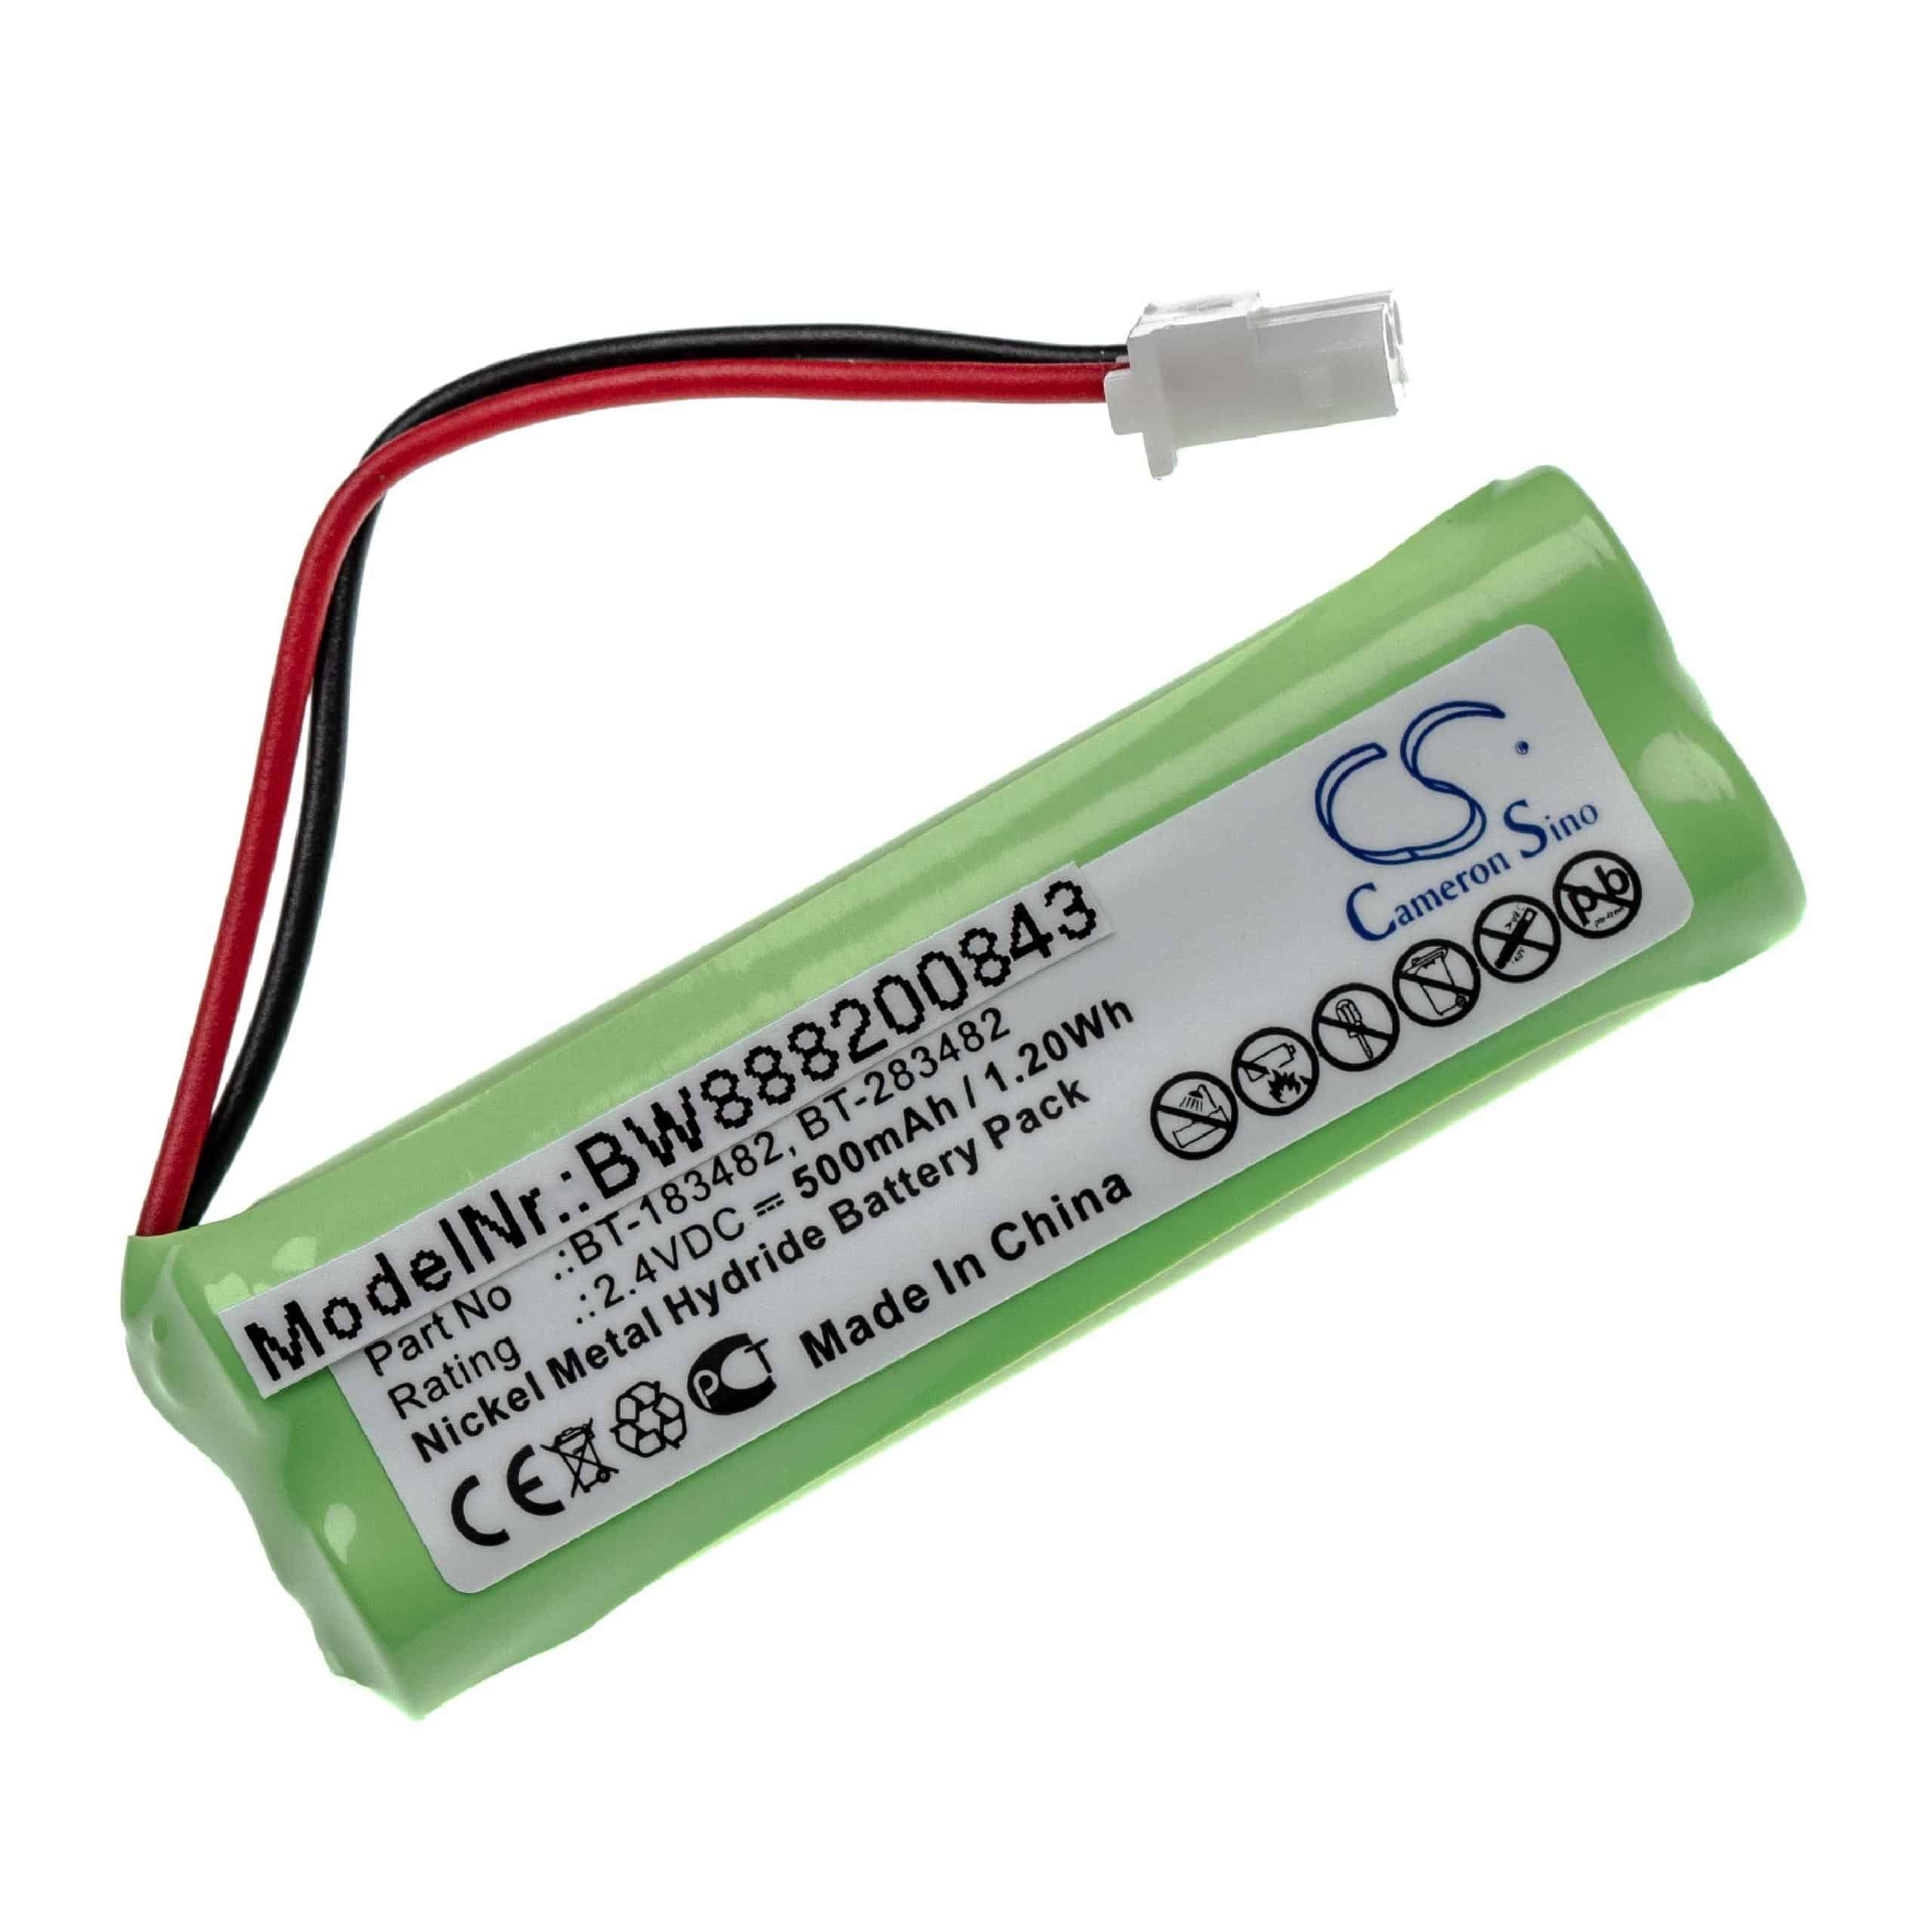 Landline Phone Battery Replacement for vTech BATT183482, 89-1348-01-00, 89-1348-01 - 500mAh 2.4V NiMH